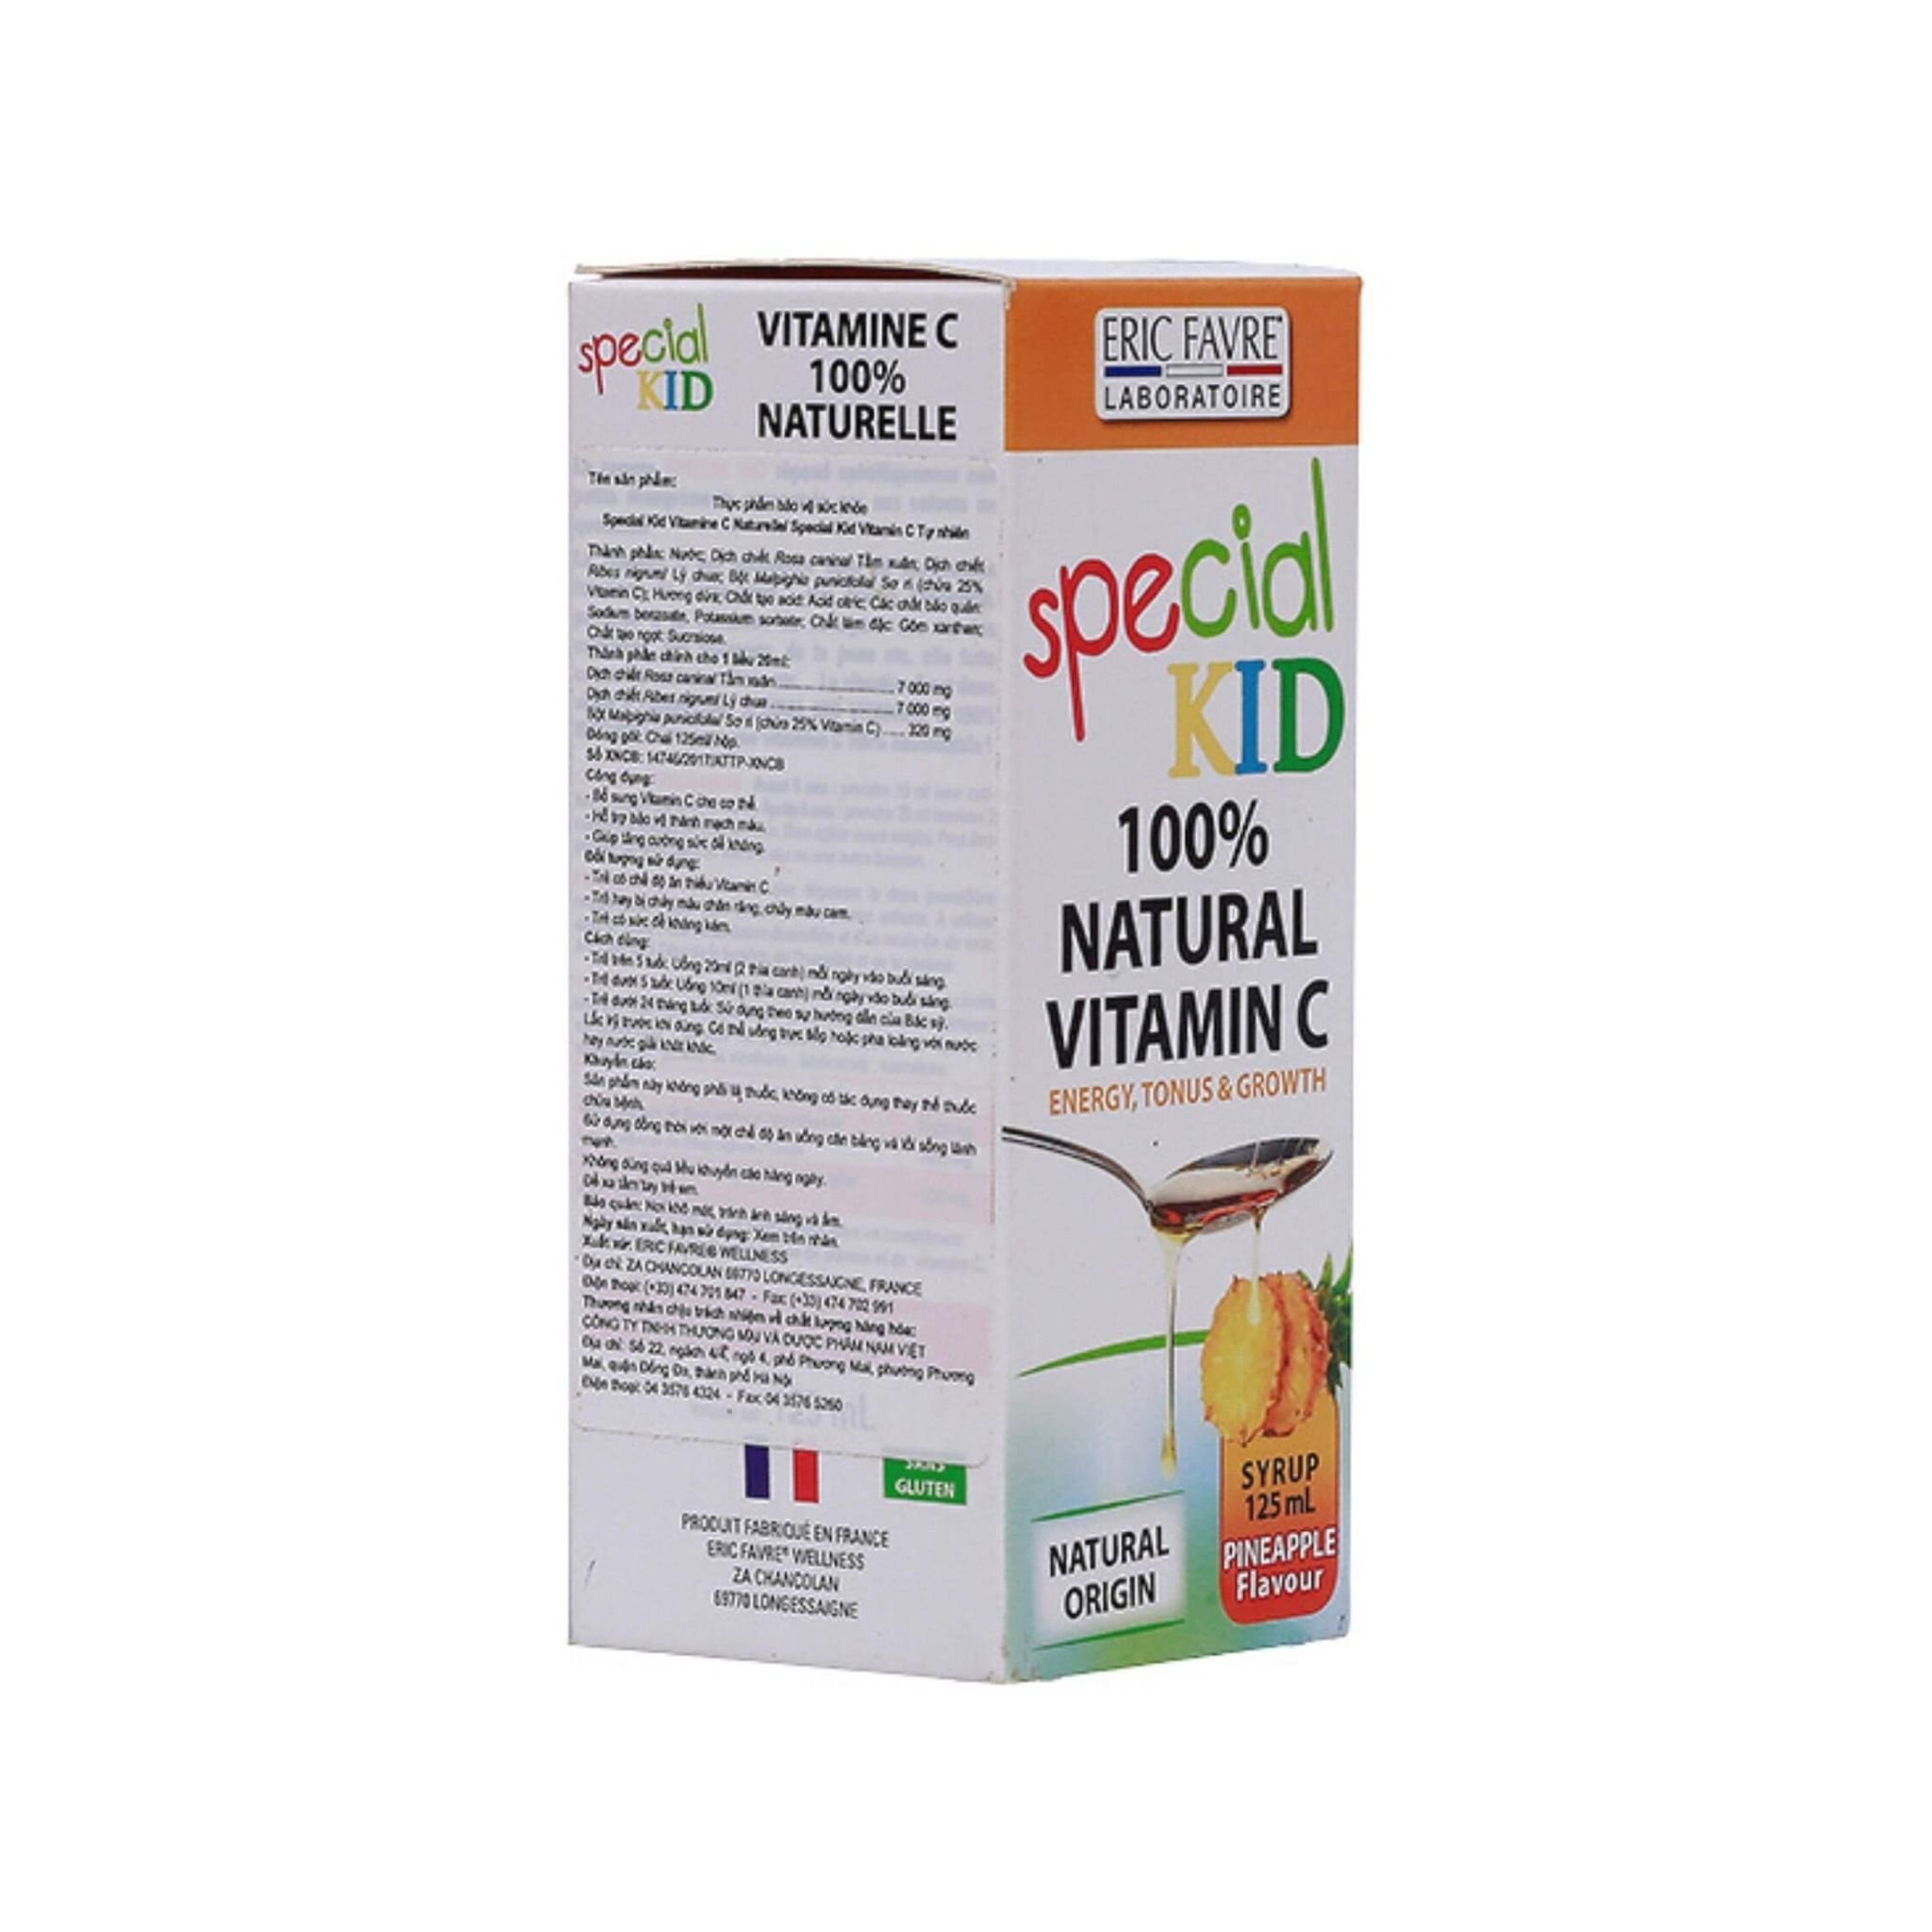  Special Kid Vitamine C Naturelle - Đề kháng khỏe, Trẻ năng động [Nhập khẩu Pháp] 